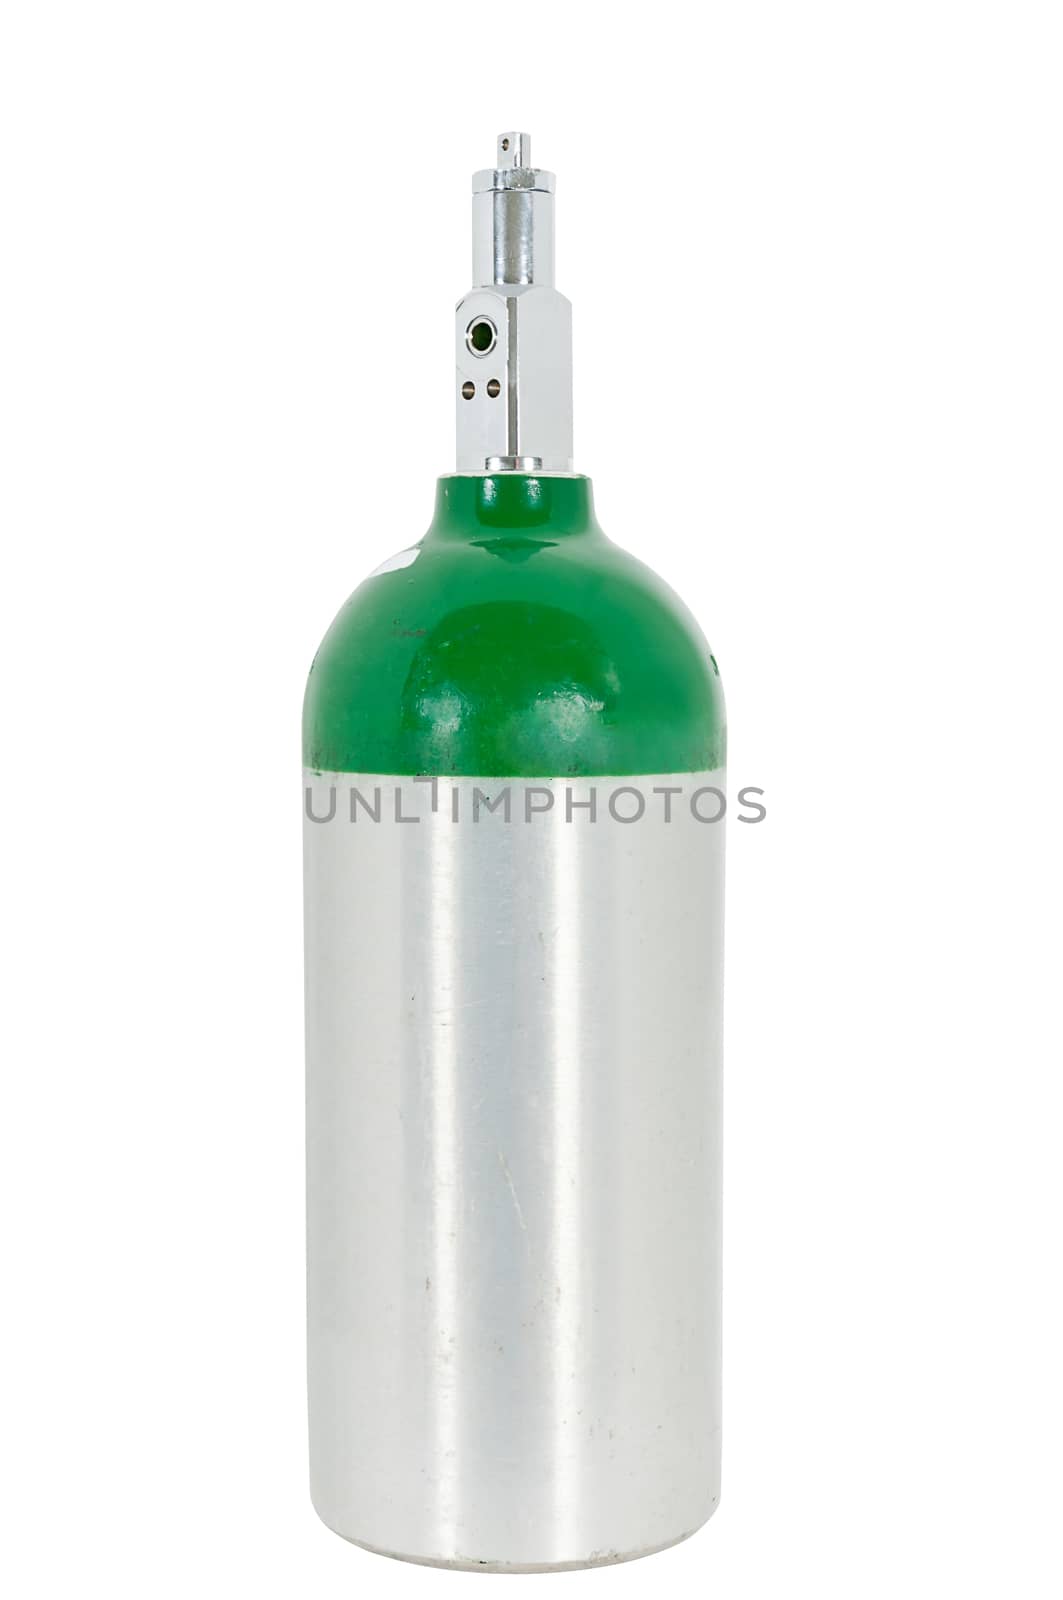 Medical Oxygen Cylinder by rcarner